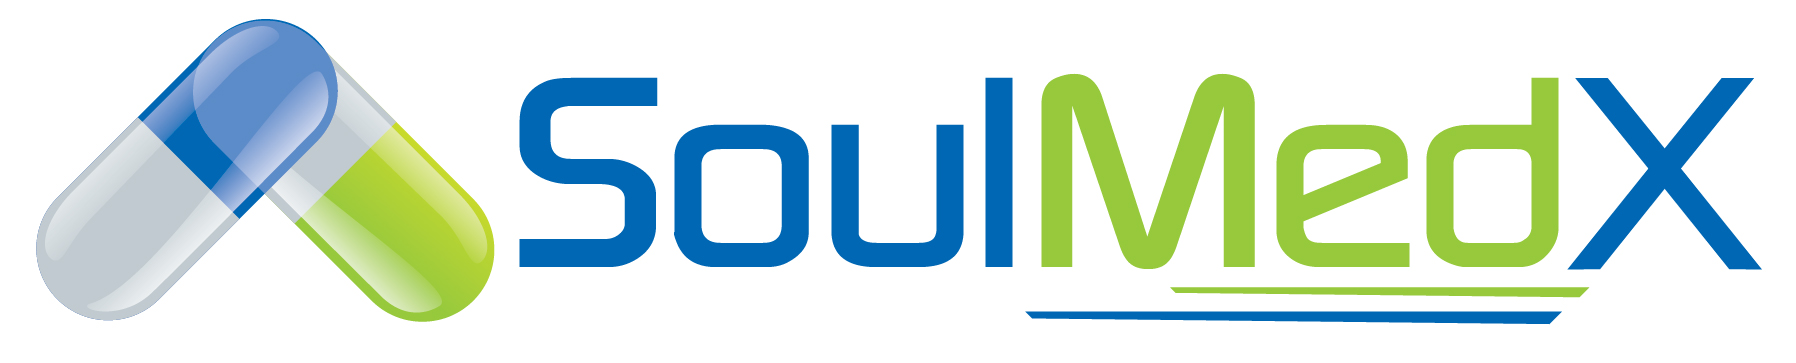 SoulMedX logo